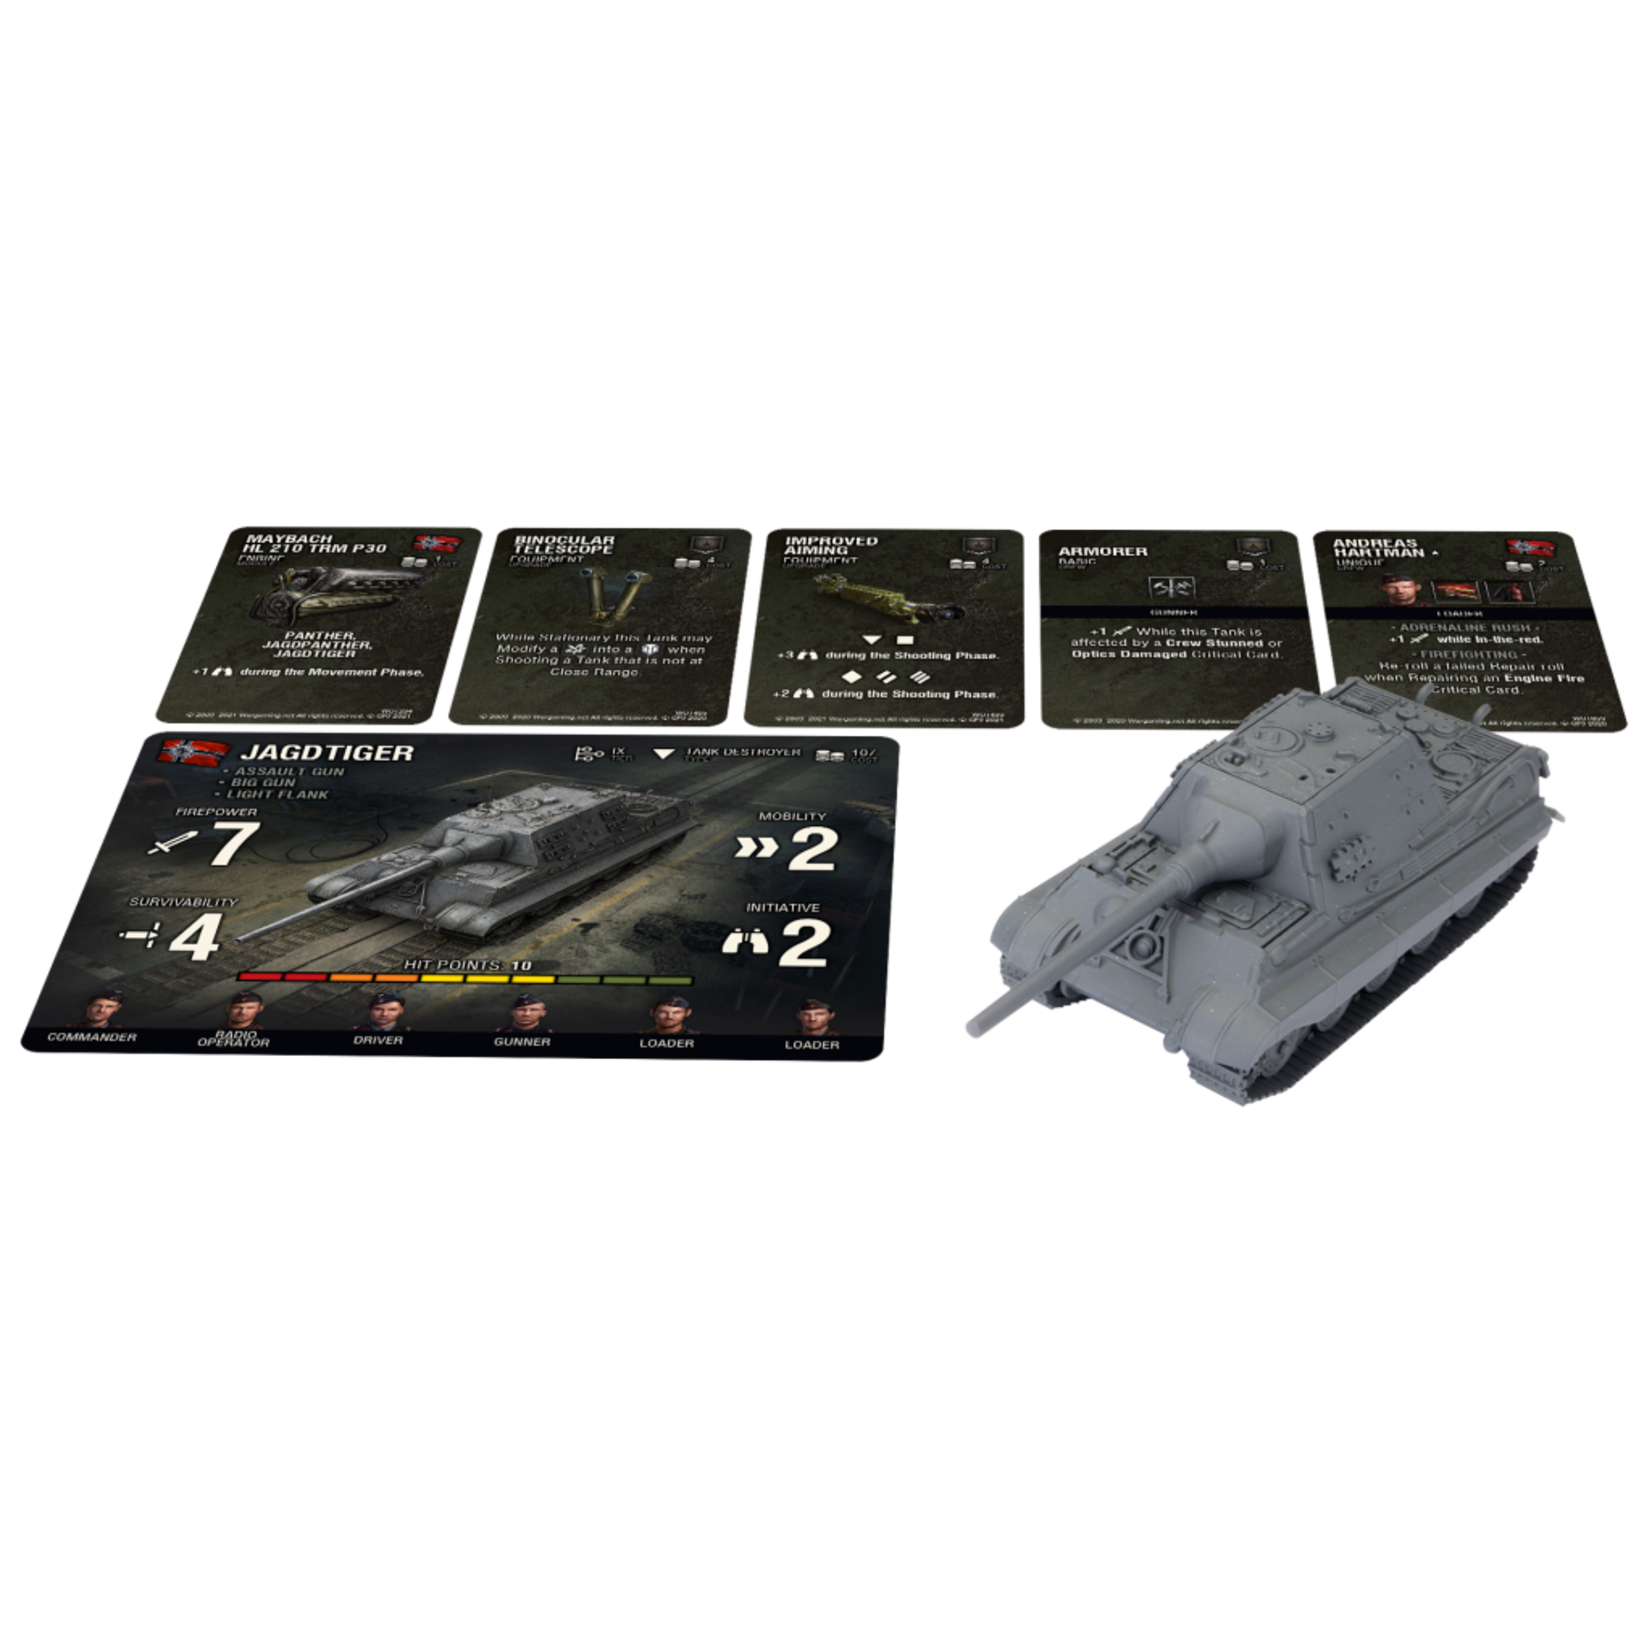 Gale Force 9 World of Tanks Expansion: German Jagdtiger